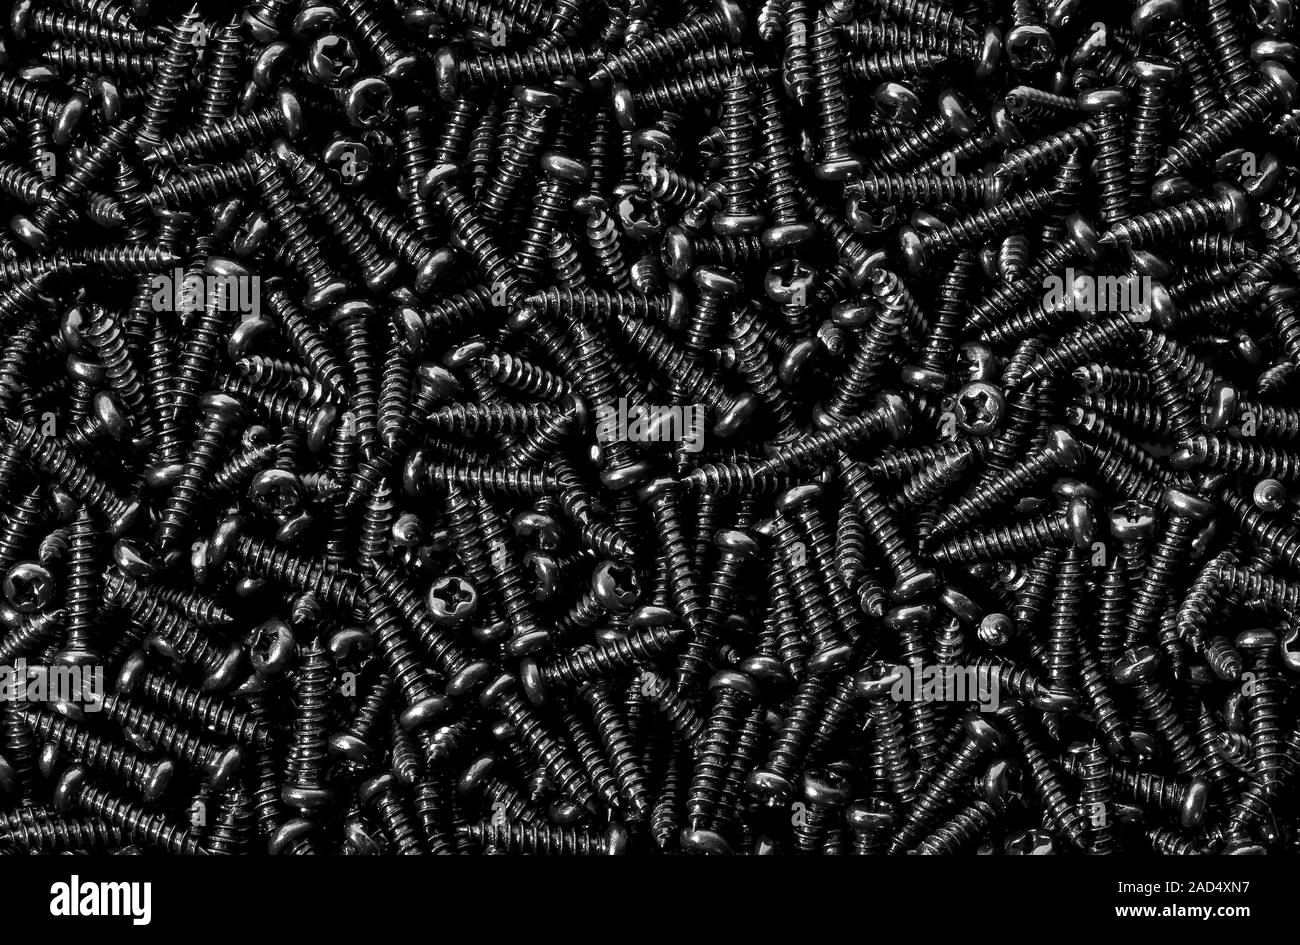 Background pile of shiny black screws Stock Photo